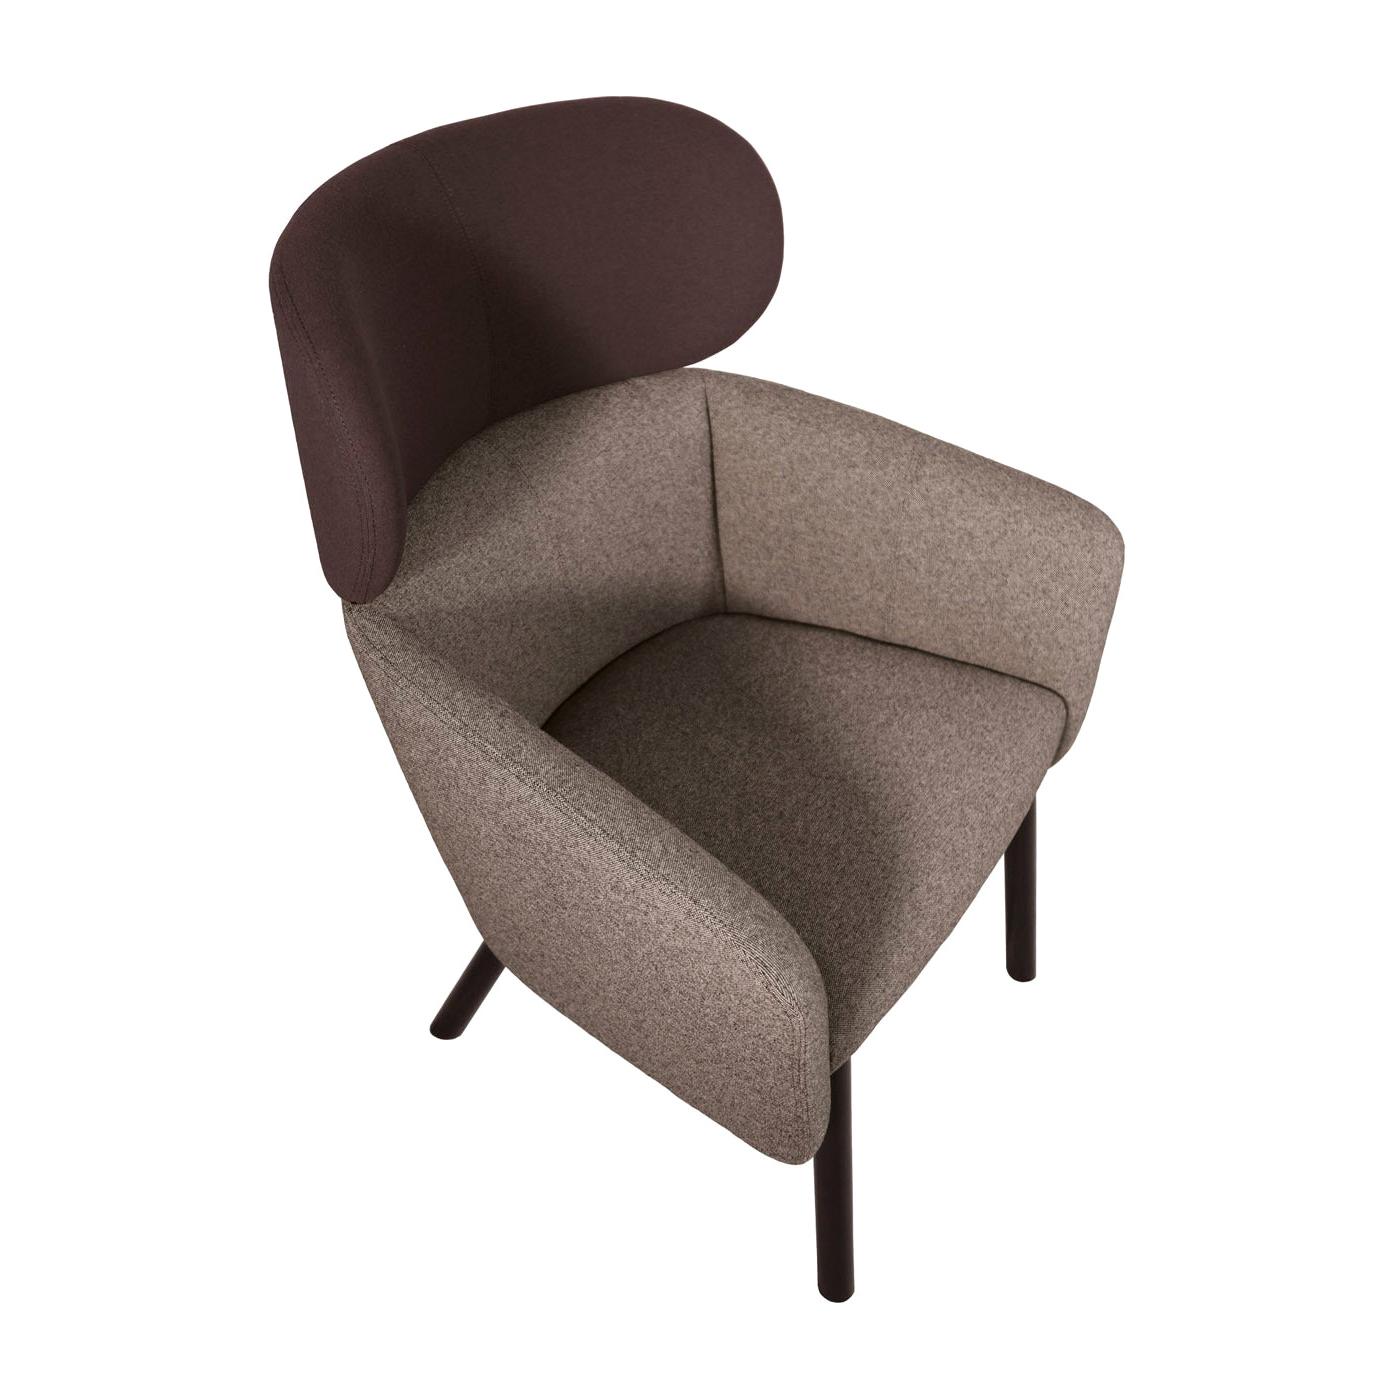 Balù Lounge Brown Armchair by Emilio Nanni